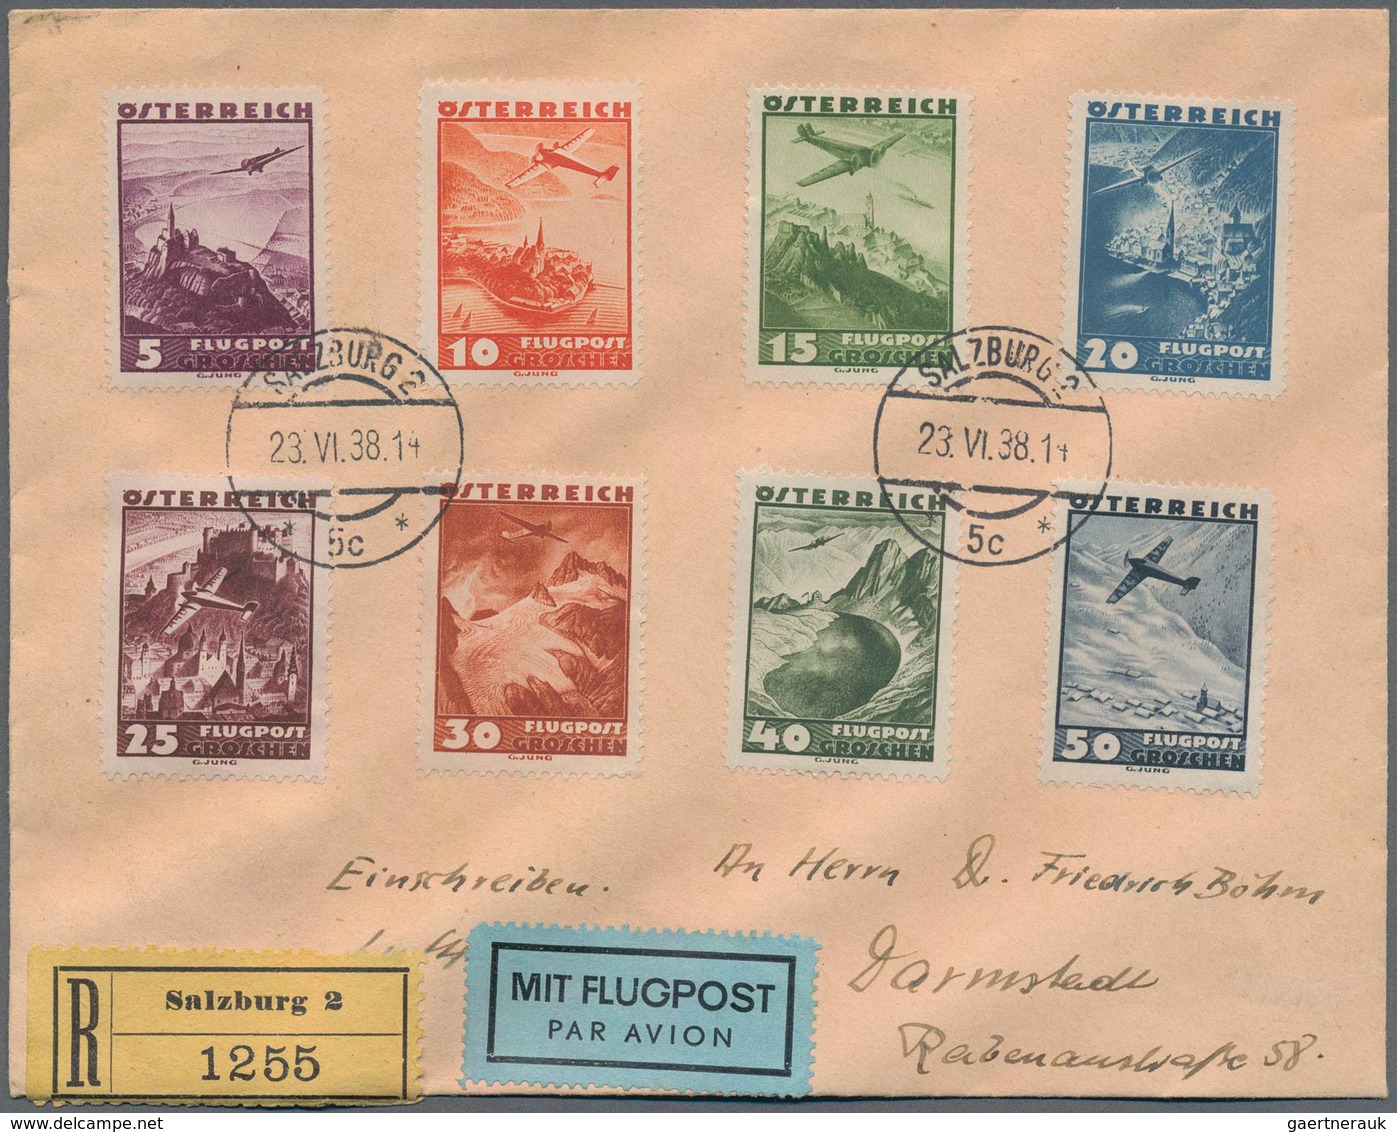 Österreich - Flugpost: 1938, Acht bessere Briefe mit u.a. Satzfrankaturen der Luftpost-Ausgaben 1928